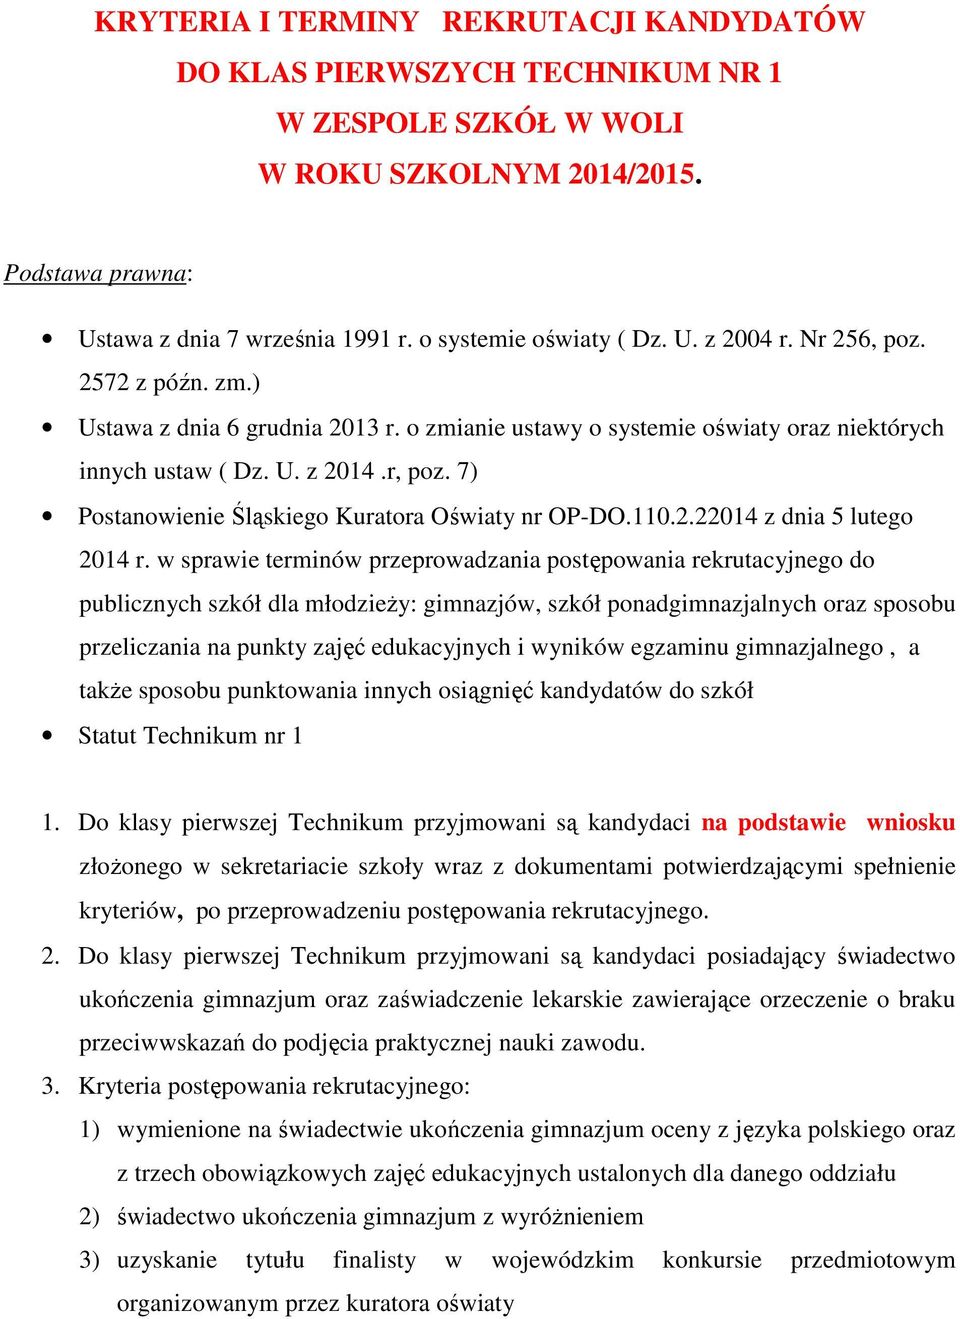 7) Postanowienie Śląskiego Kuratora Oświaty nr OP-DO.110.2.22014 z dnia 5 lutego 2014 r.